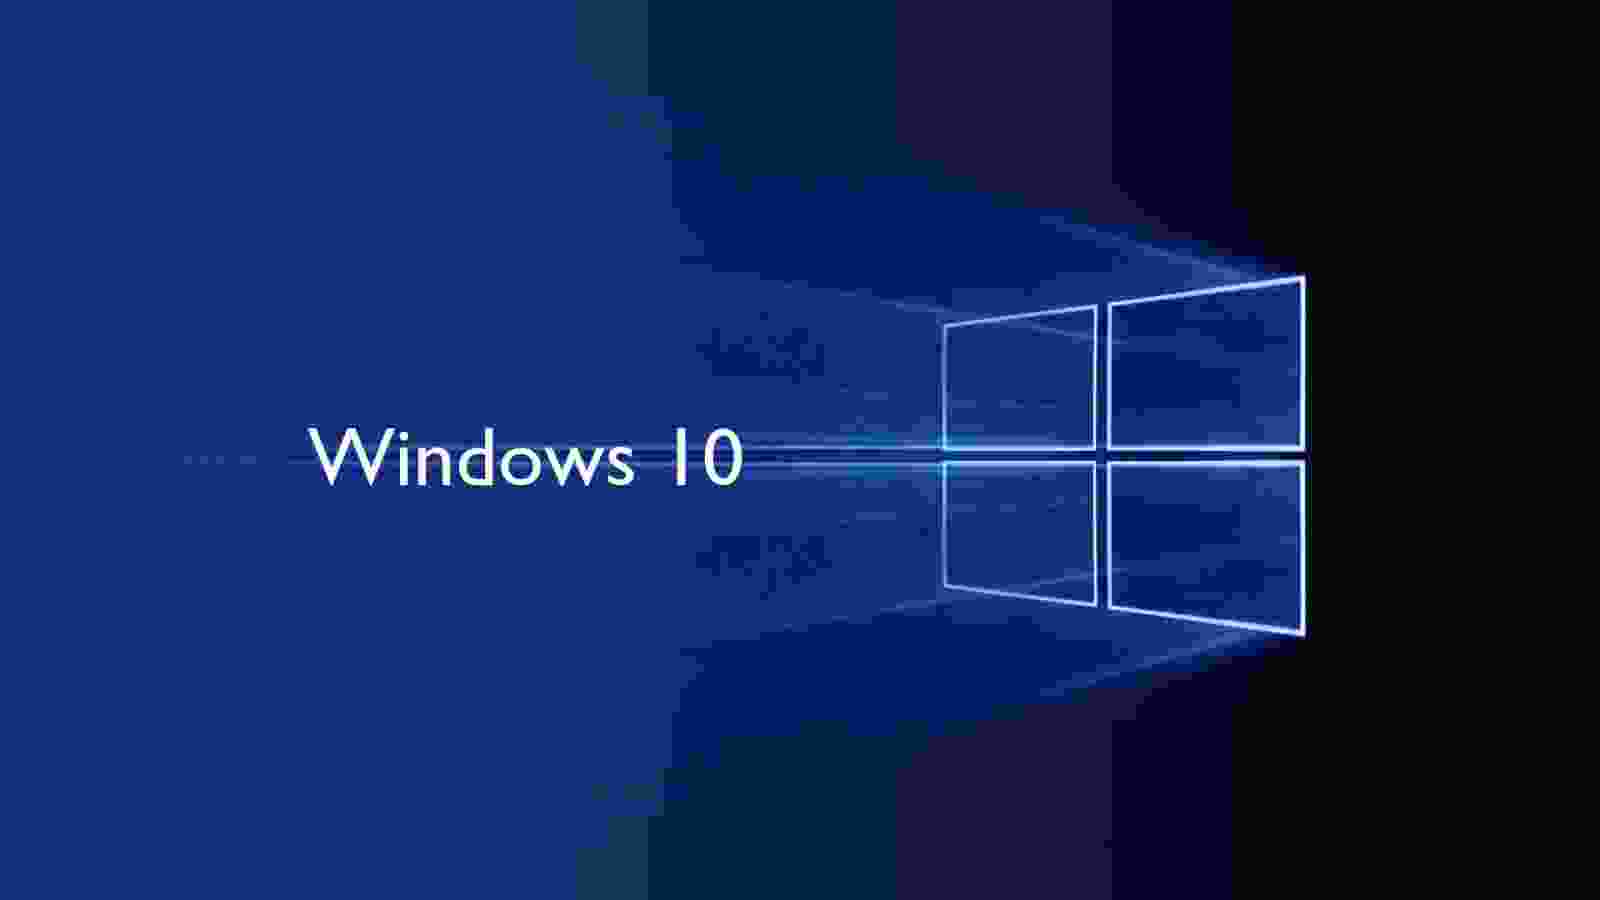 Trong suốt 32 năm phát triển của mình, Windows đã có nhiều thay đổi đáng kinh ngạc. Từ giao diện cho tới tính năng của nó, Windows luôn được cải tiến và thay đổi để đáp ứng nhu cầu và mong muốn của người dùng. Hãy cùng nhìn lại quá trình phát triển của Windows và khám phá những điều thú vị của nó!